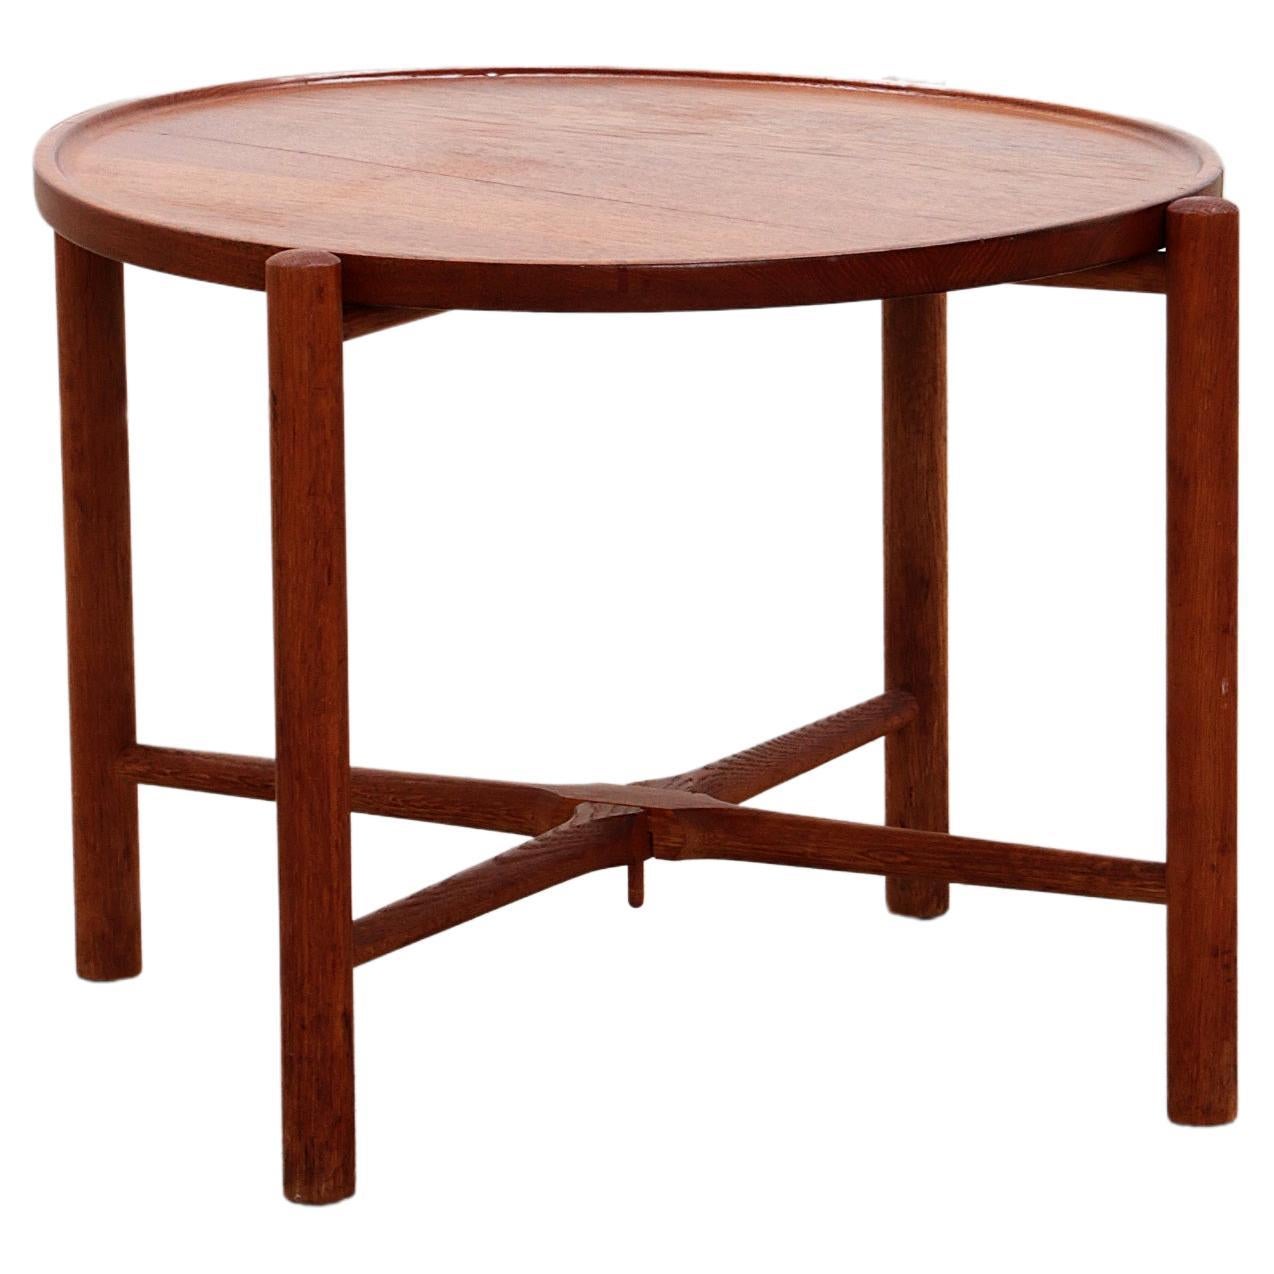 Side table Model AT35 design by Hans J. Wegner 1945 Denmark For Sale